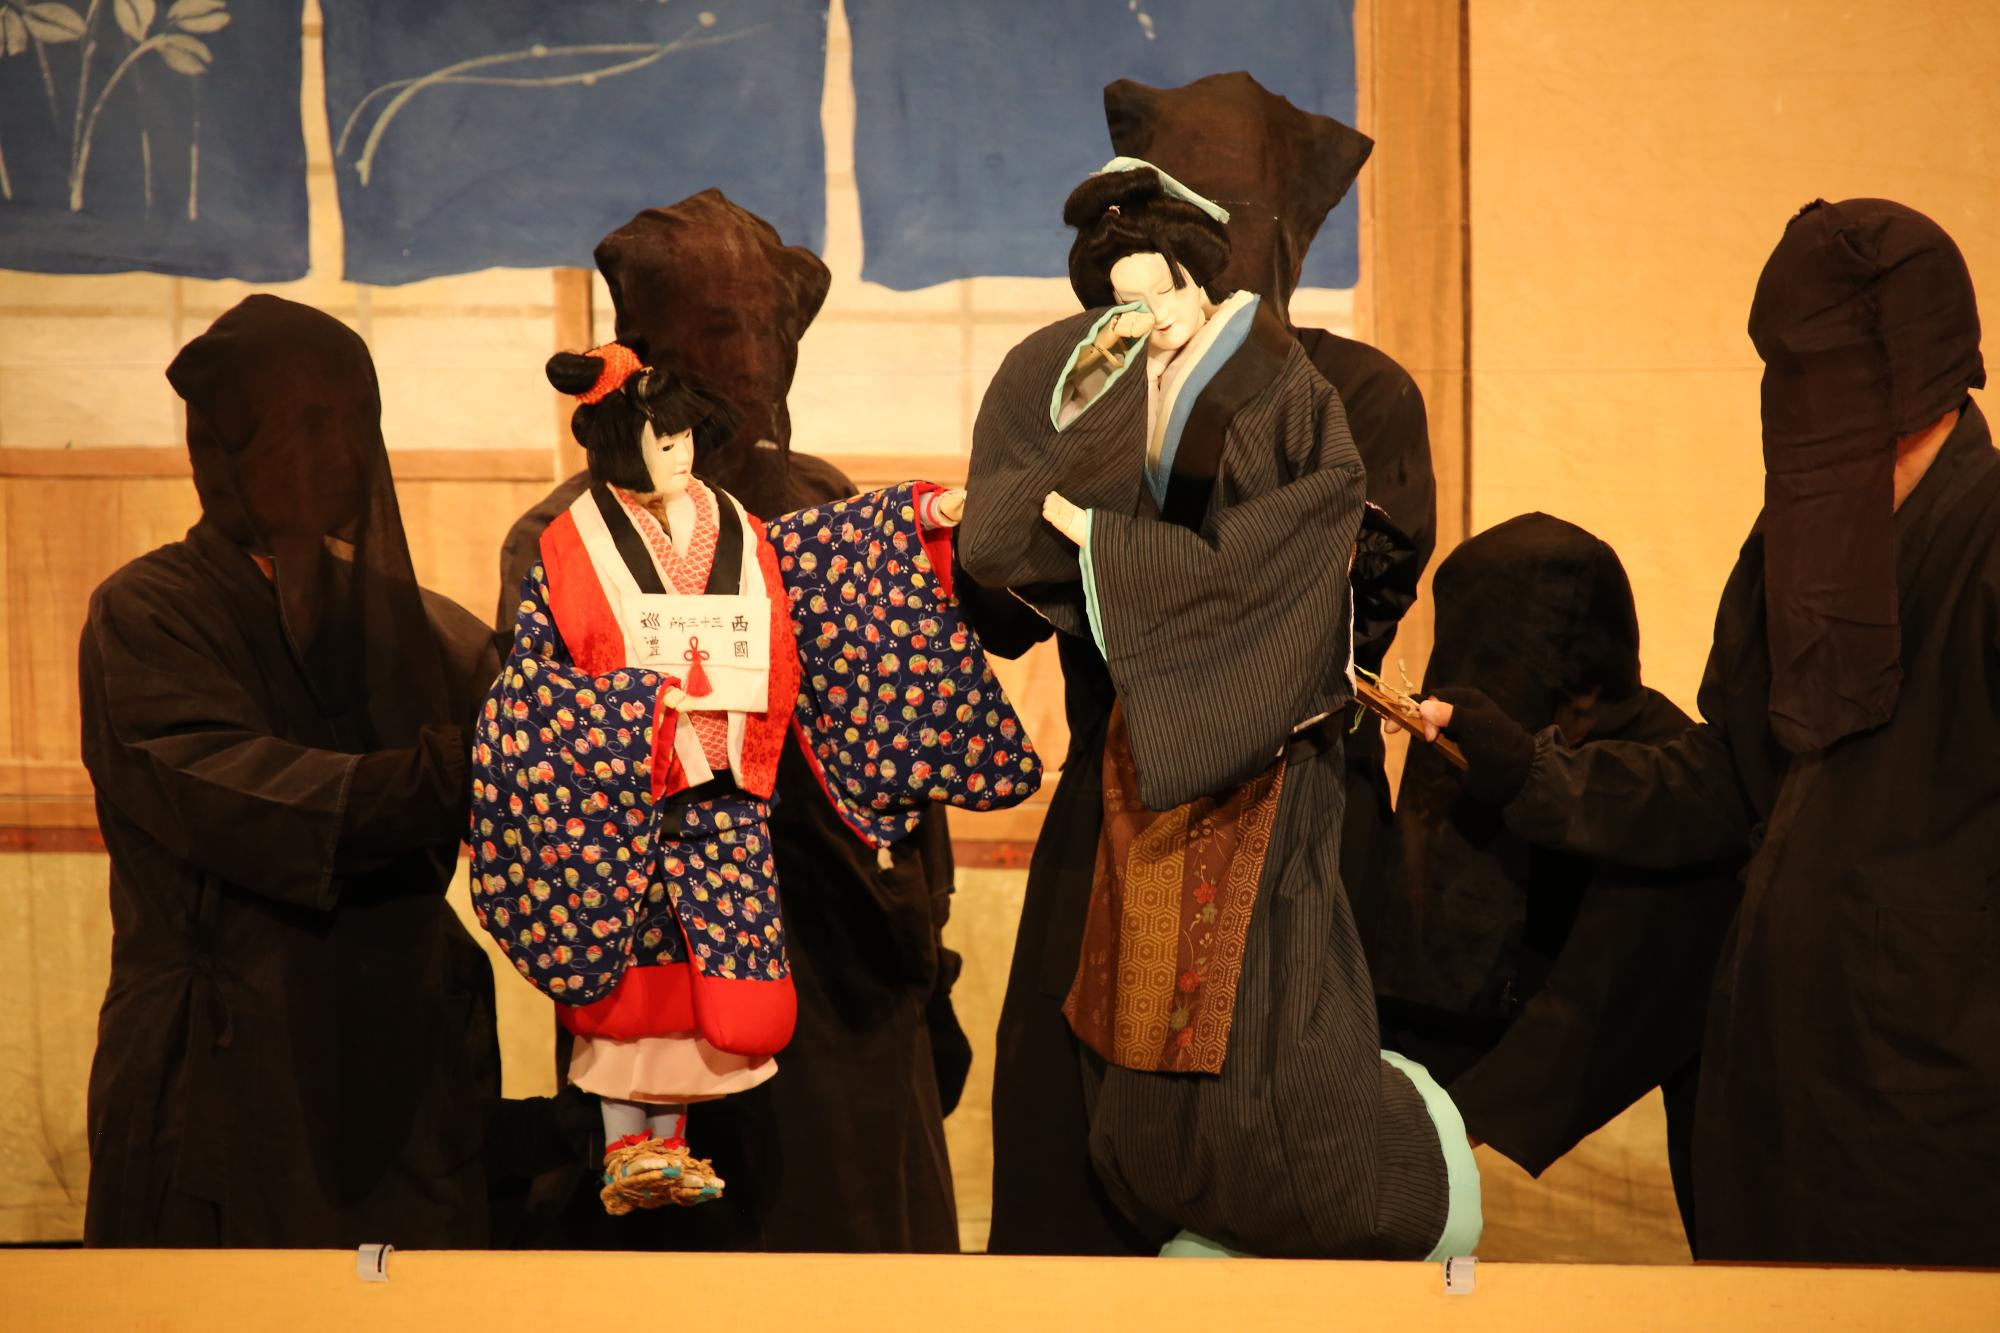 舞台上で演じられている人形浄瑠璃と人形を操る黒子の写真